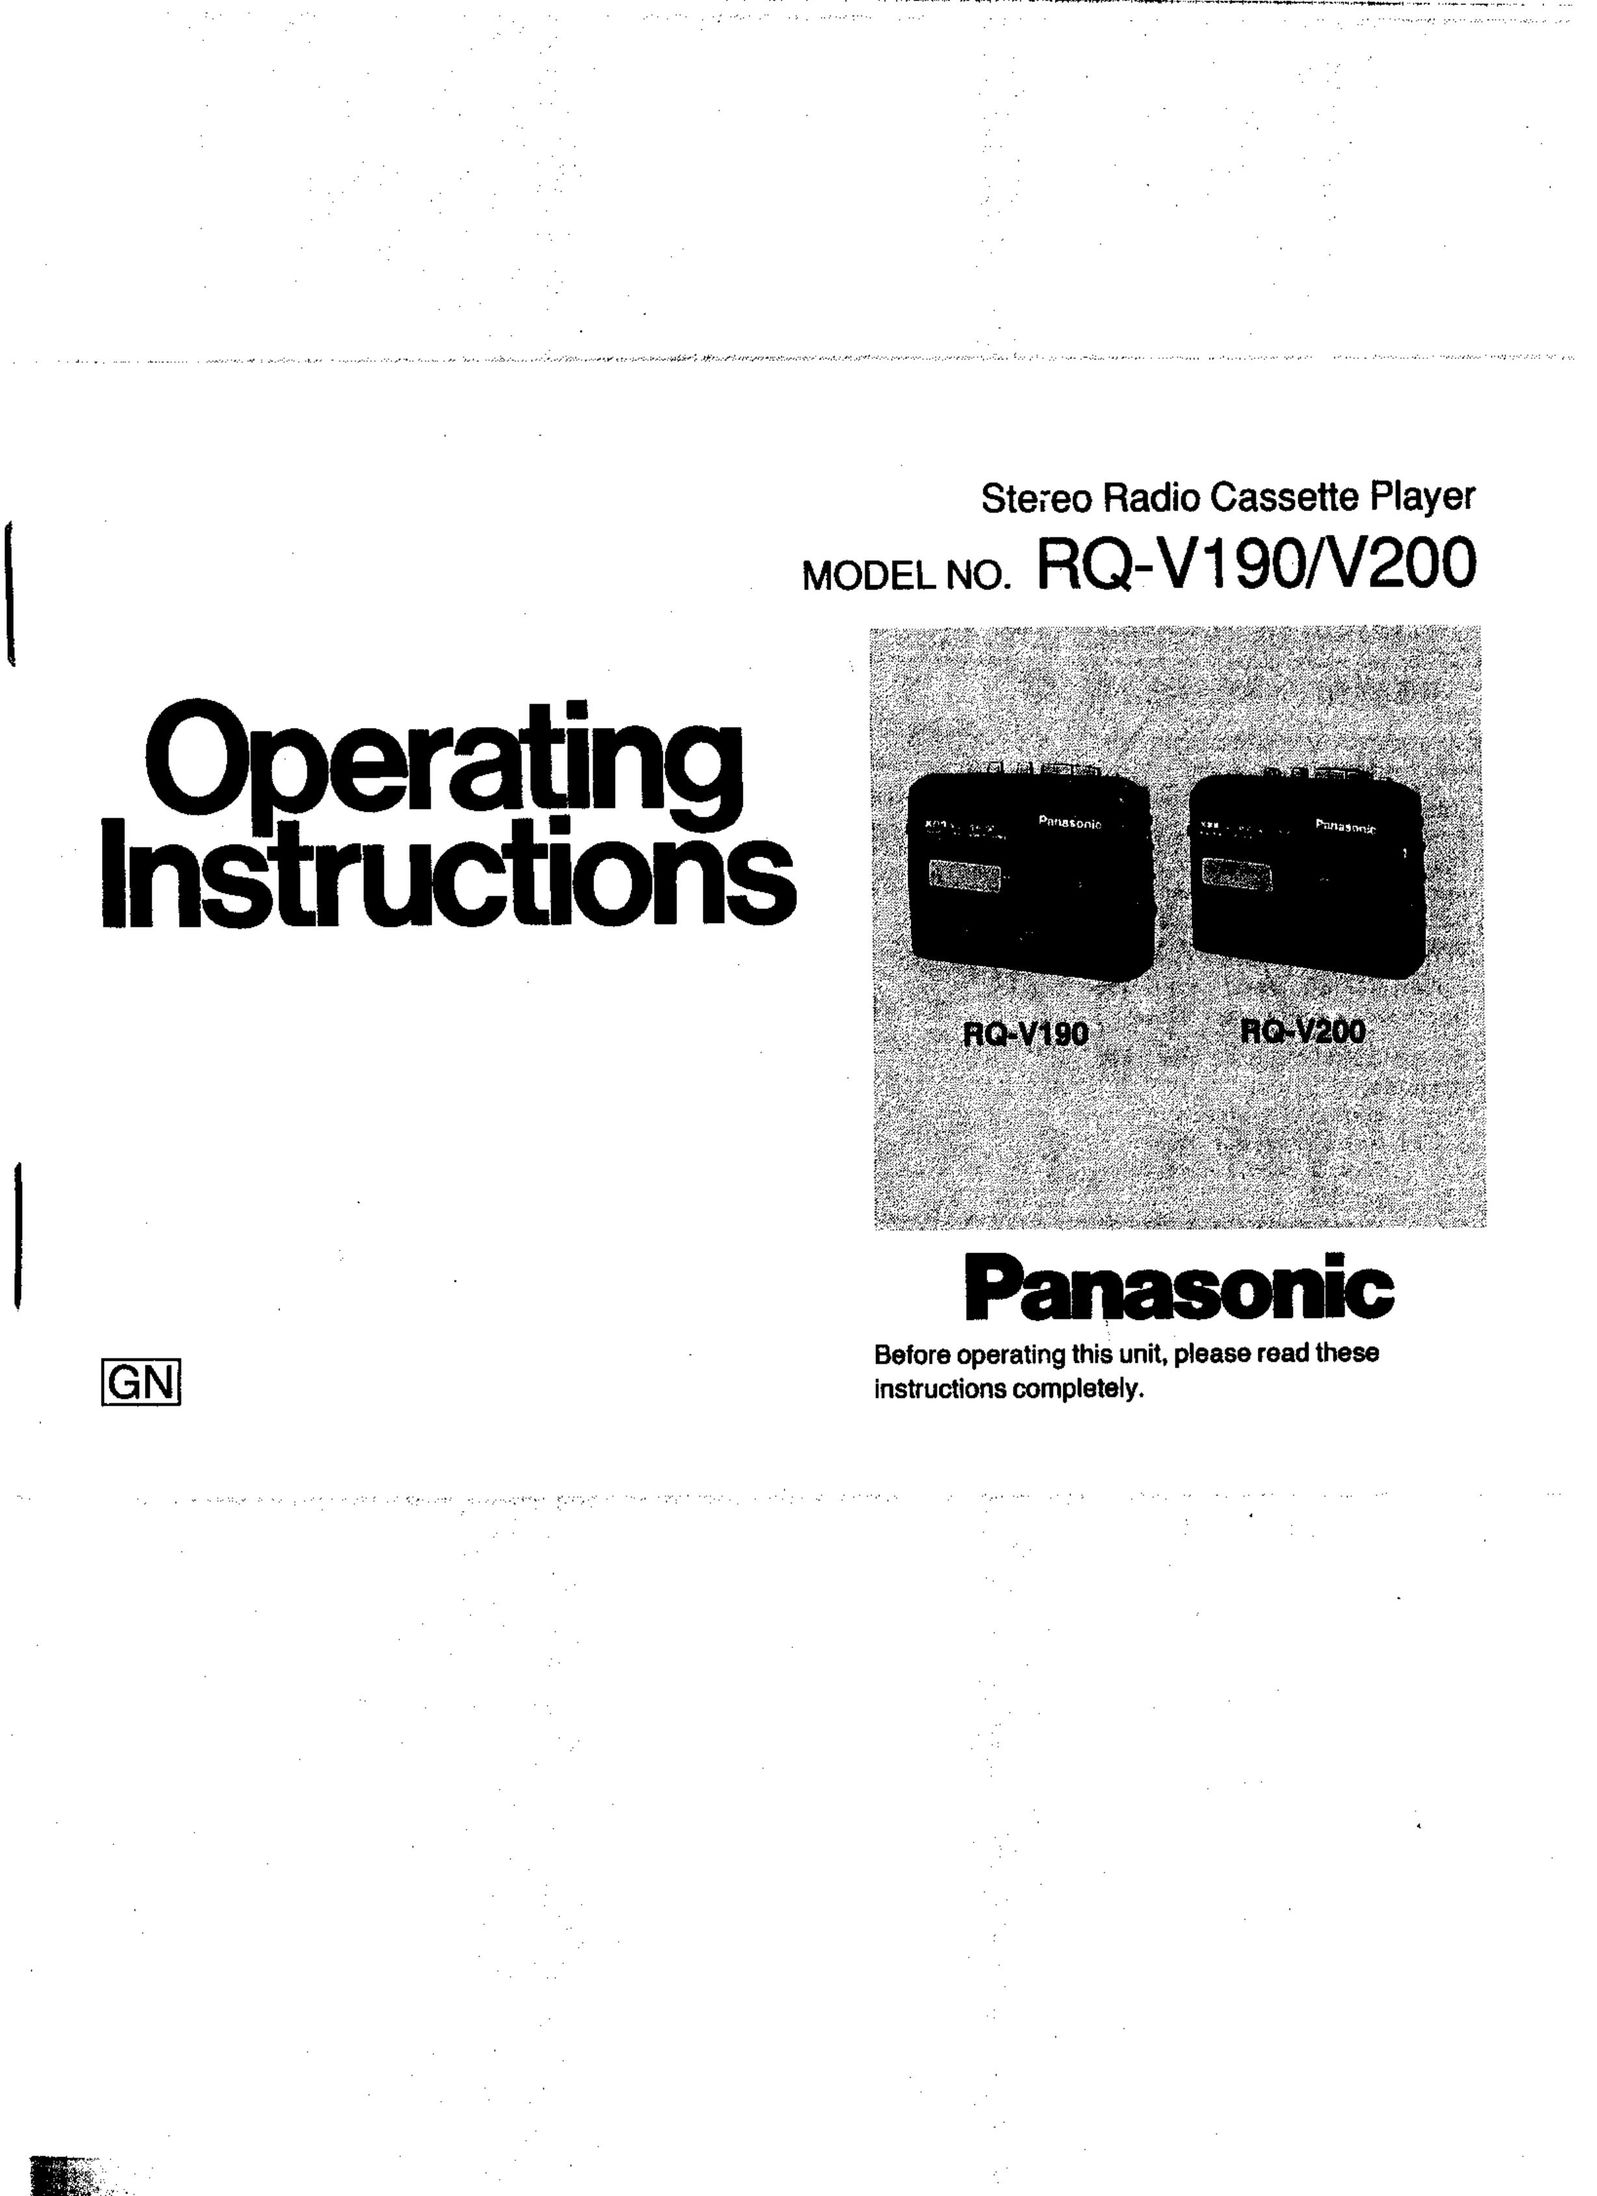 Panasonic RQ-V190 Cassette Player User Manual